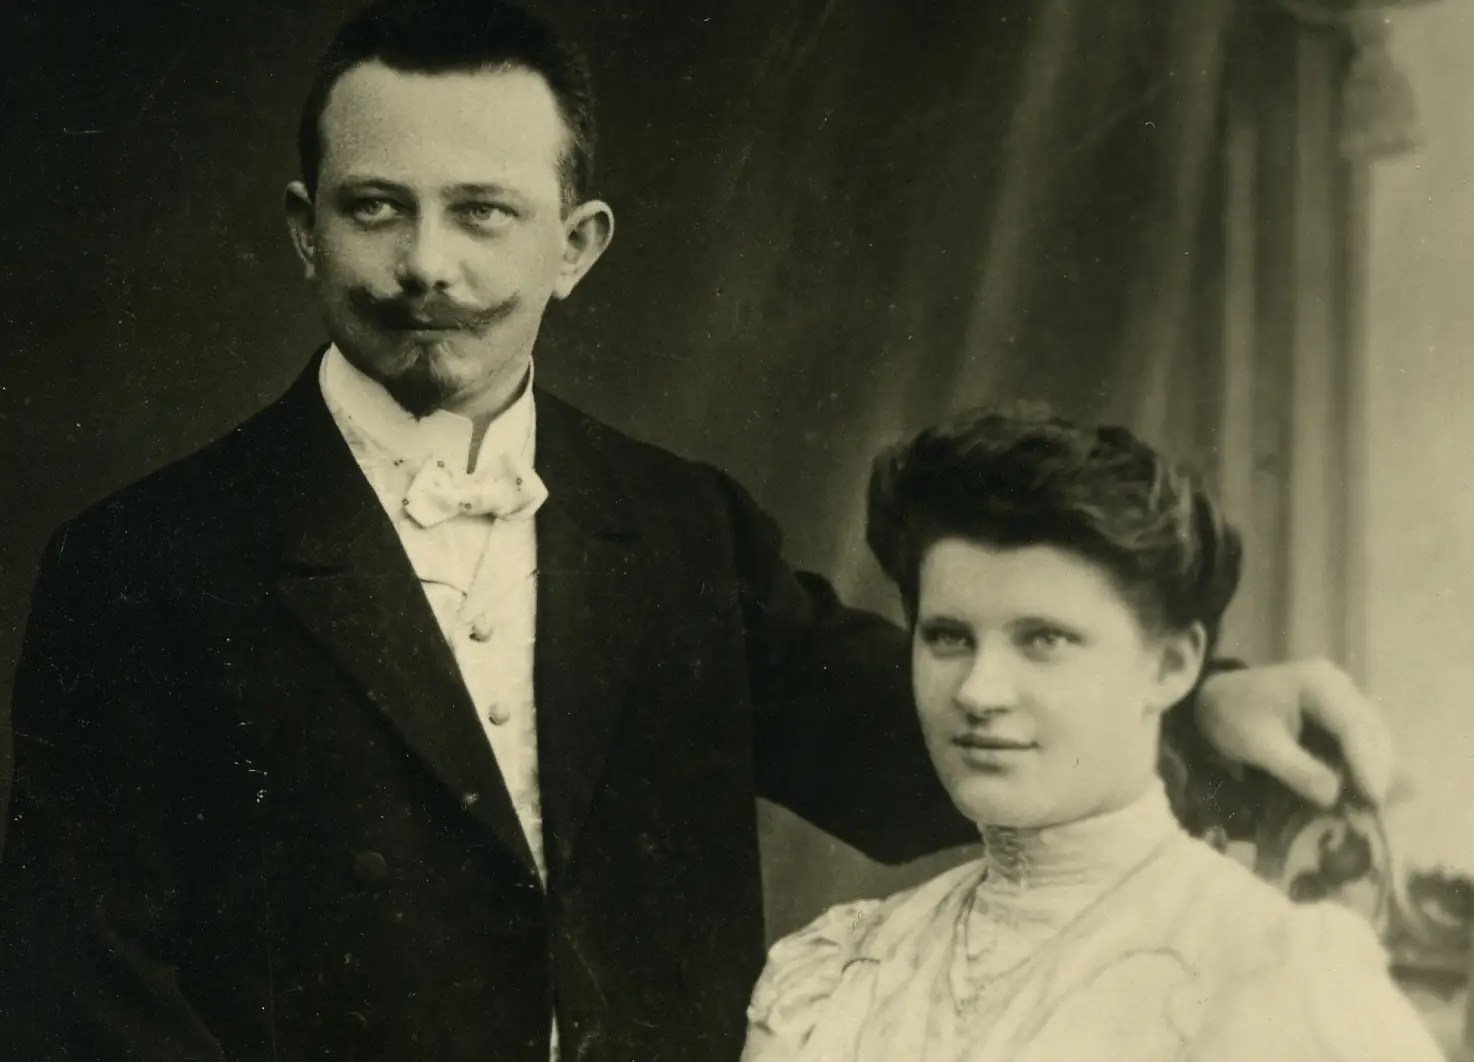 Elsa Tesmer lavorò alla Beiersdorf ad Amburgo dall’aprile 1903 alla fine dell’ottobre 1908, inizialmente come impiegata e poi come responsabile. Prese le prime due lettere del cognome e aggiunse le ultime due lettere del nome.